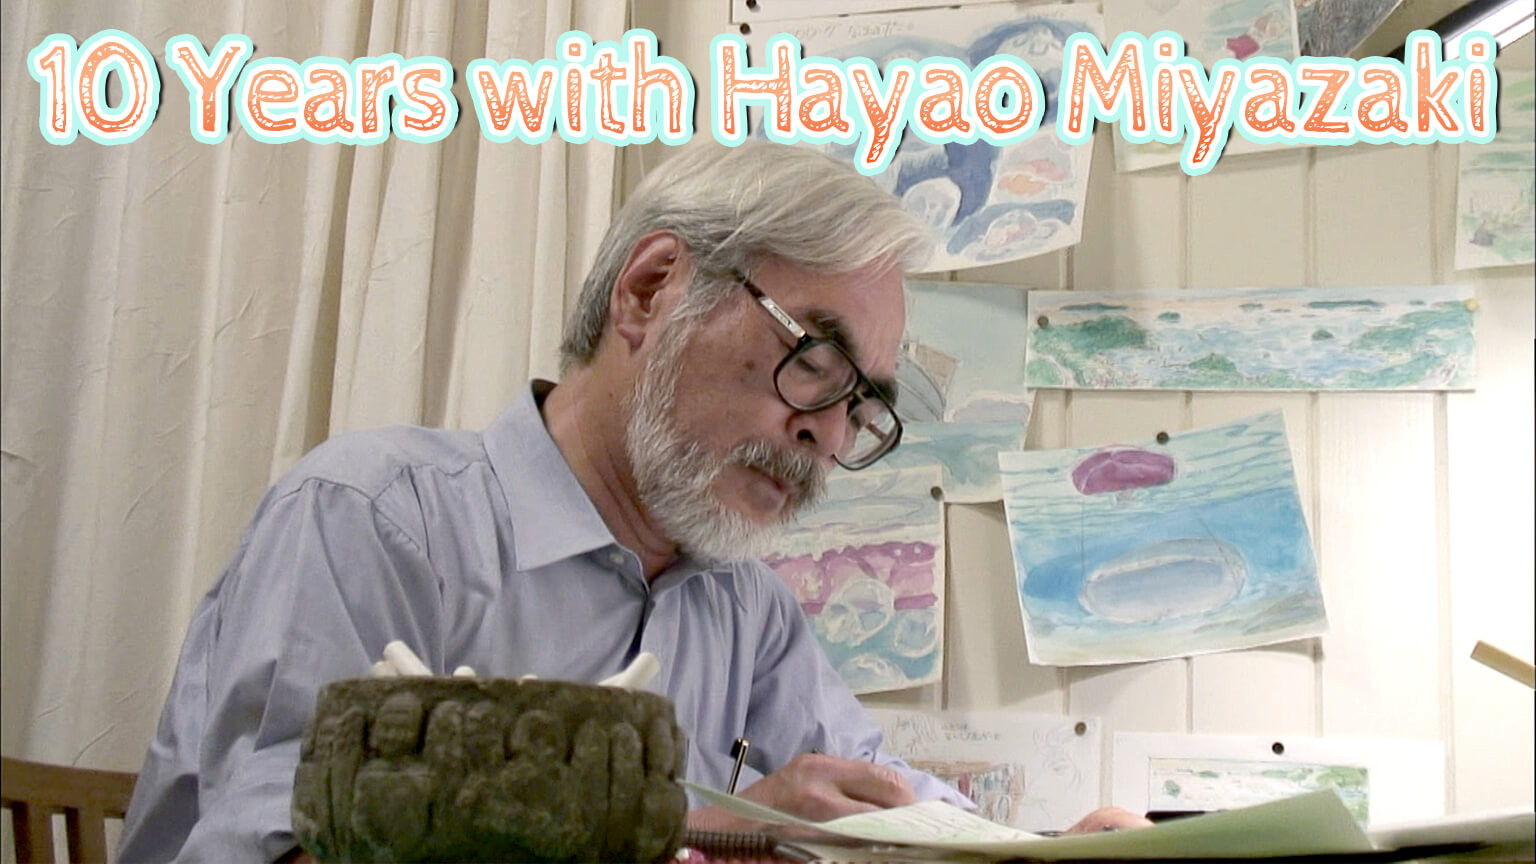 Hayao Miyazaki ile 10 Yıl
10 Years with Hayao Miyazaki